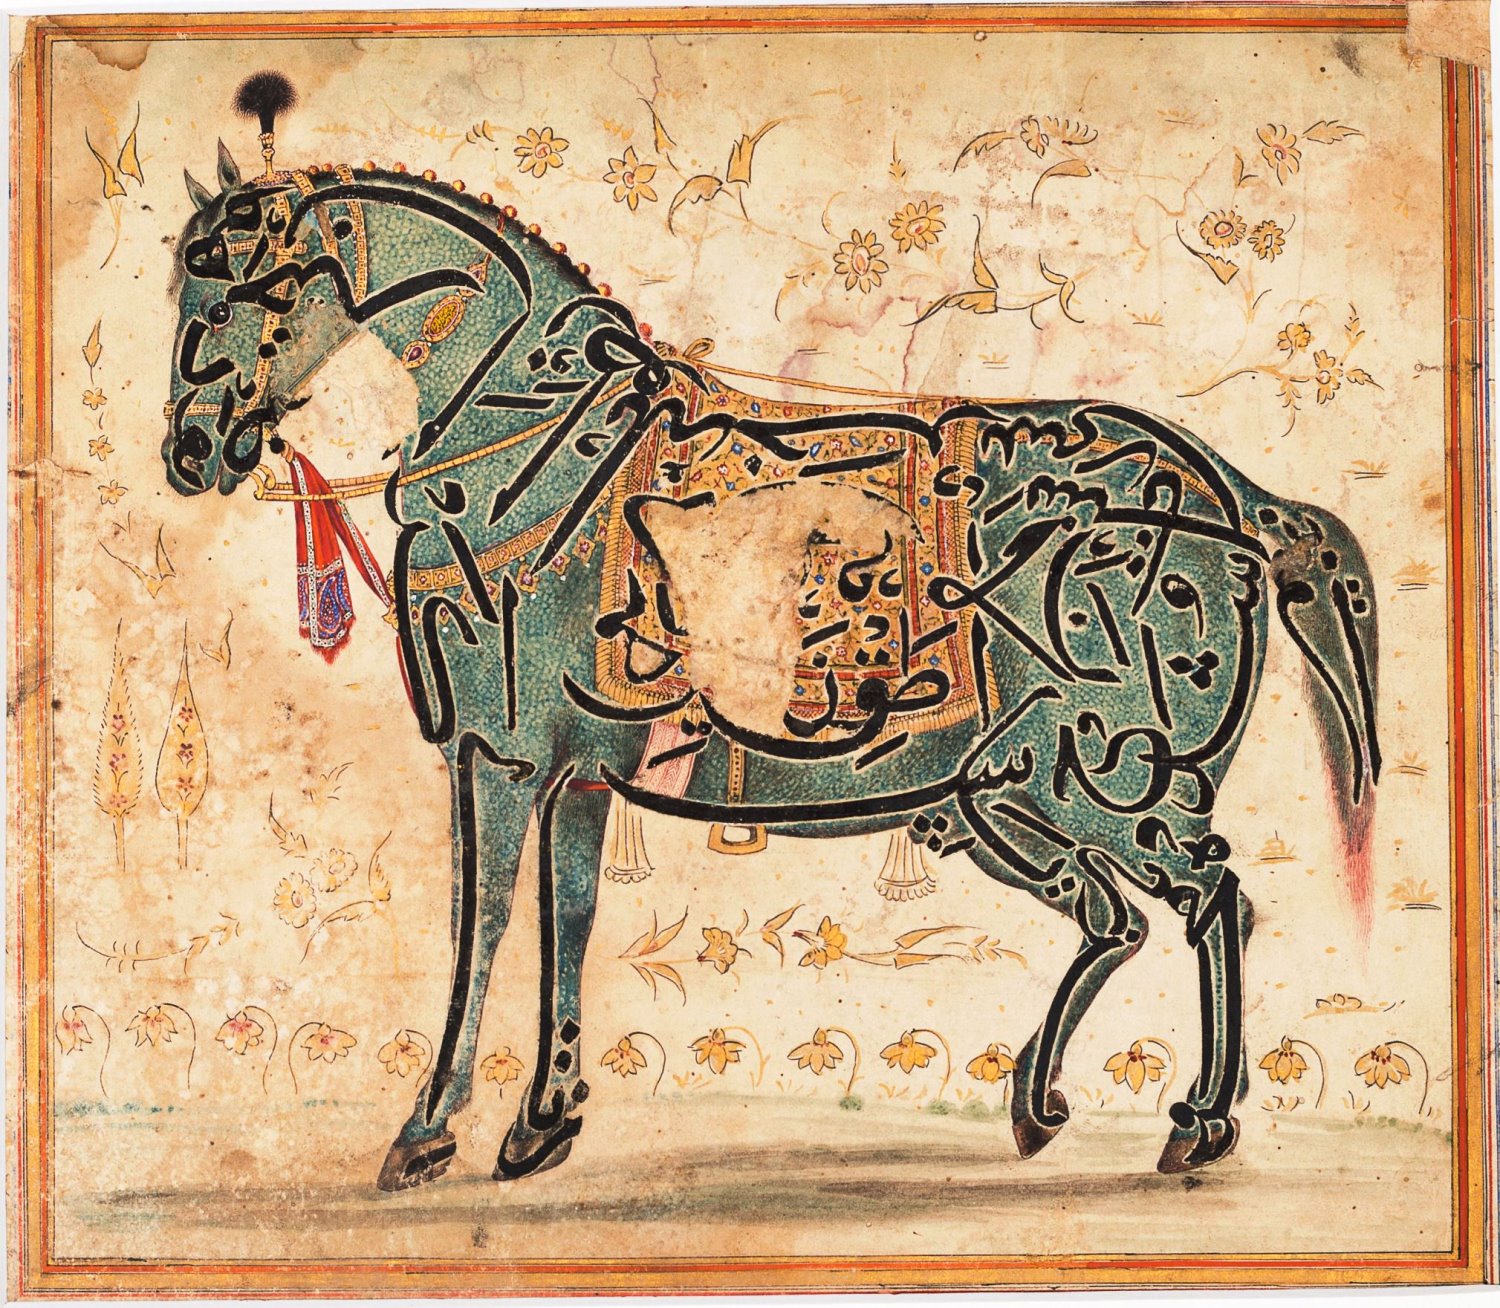 כתובת דמוית סוס, הודו המאה ה 17. באדיבות מוזאיון ישראל , ירושלים. צילום פטר לני peter lanyi